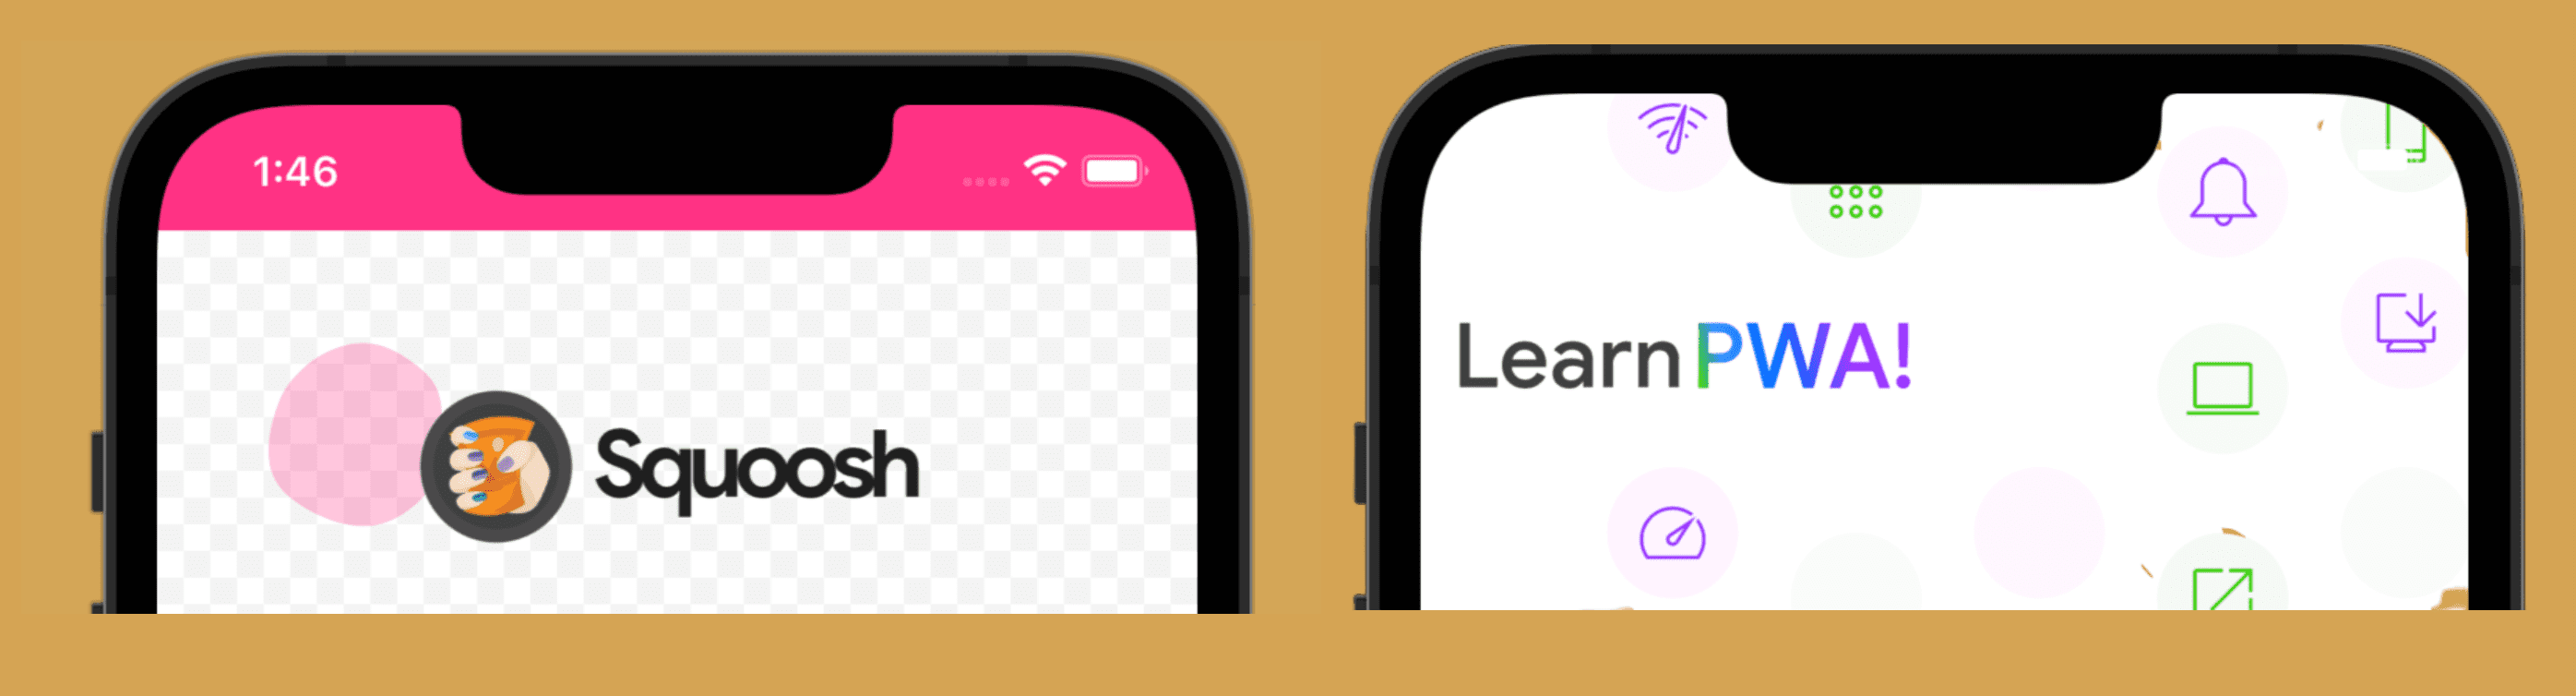 スタンドアロンのデフォルト動作（左）と全画面表示の iOS 画面（右）。